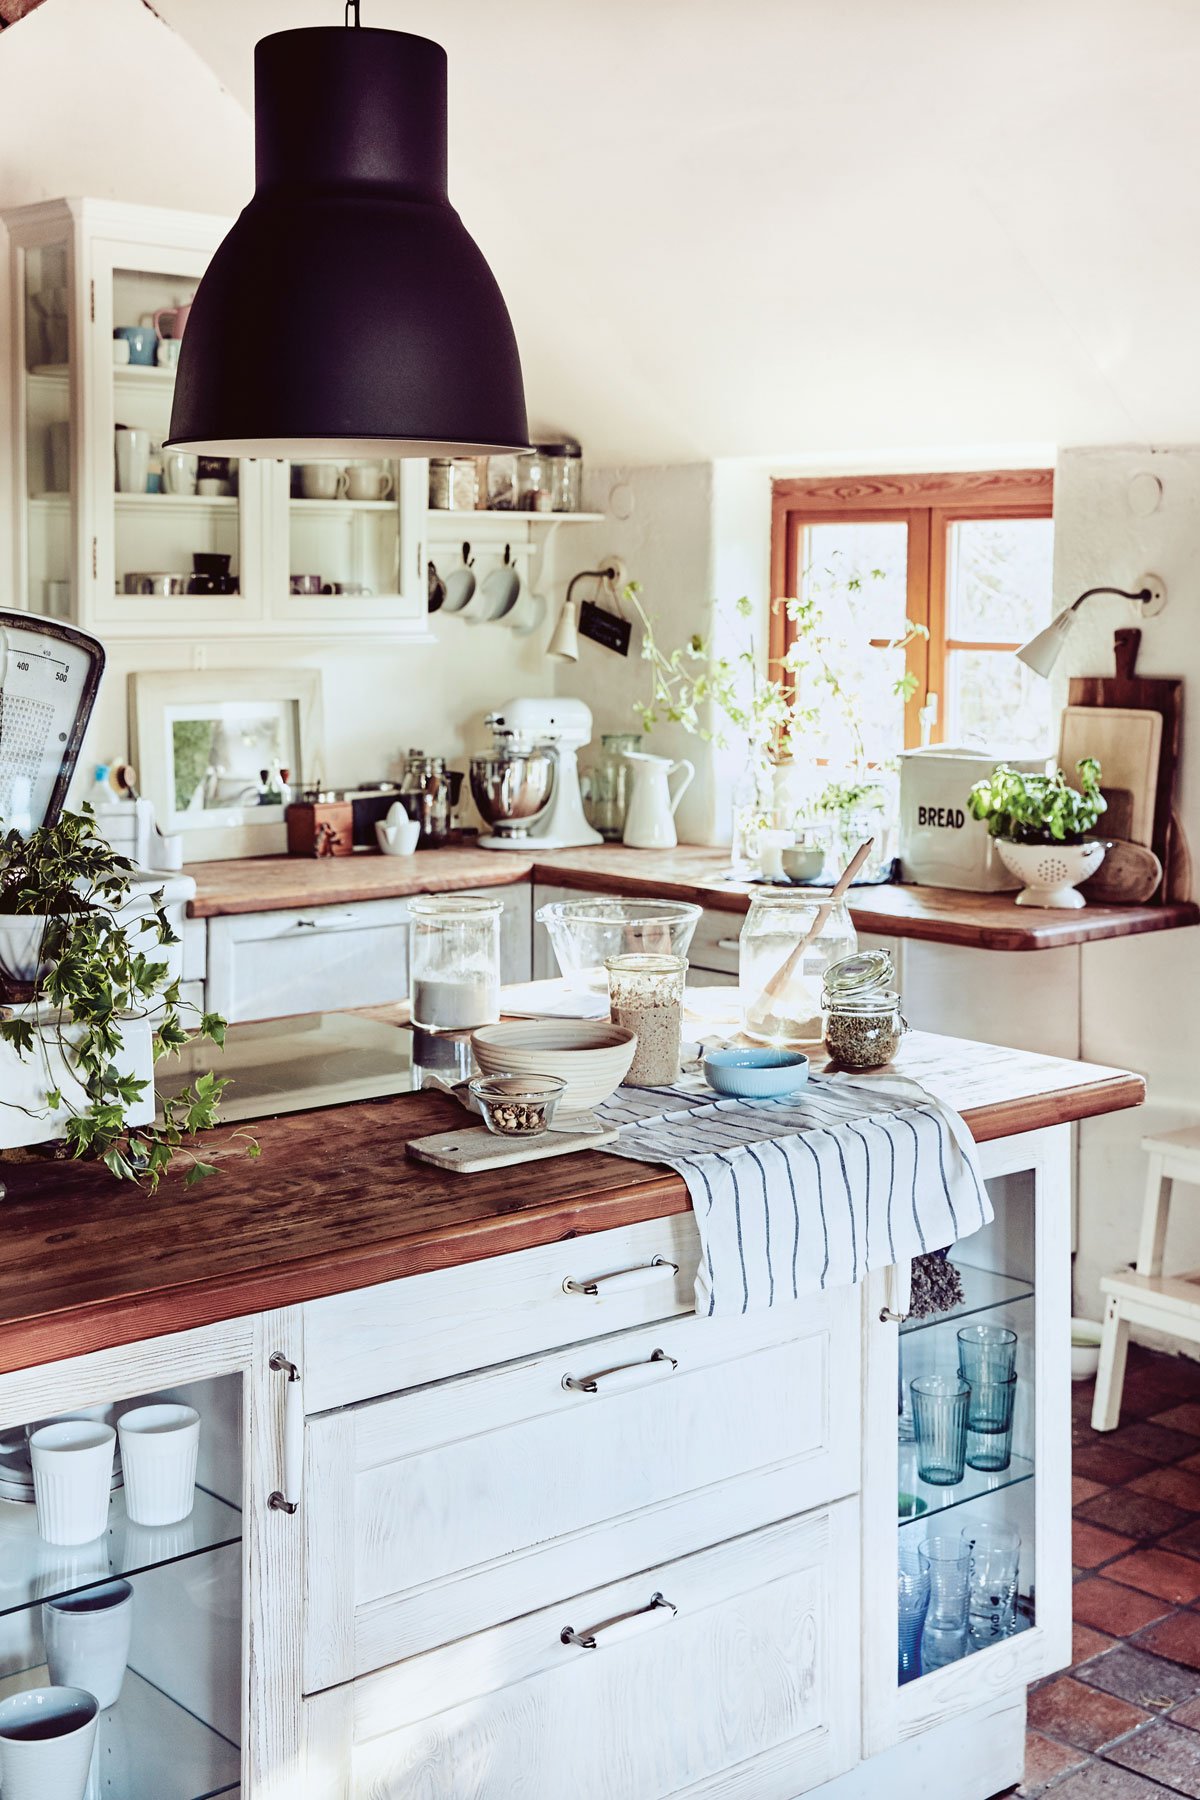 kuchyně v rustikálním stylu, s ostrůvkem a kuchyňskou linkou v bílé barvě